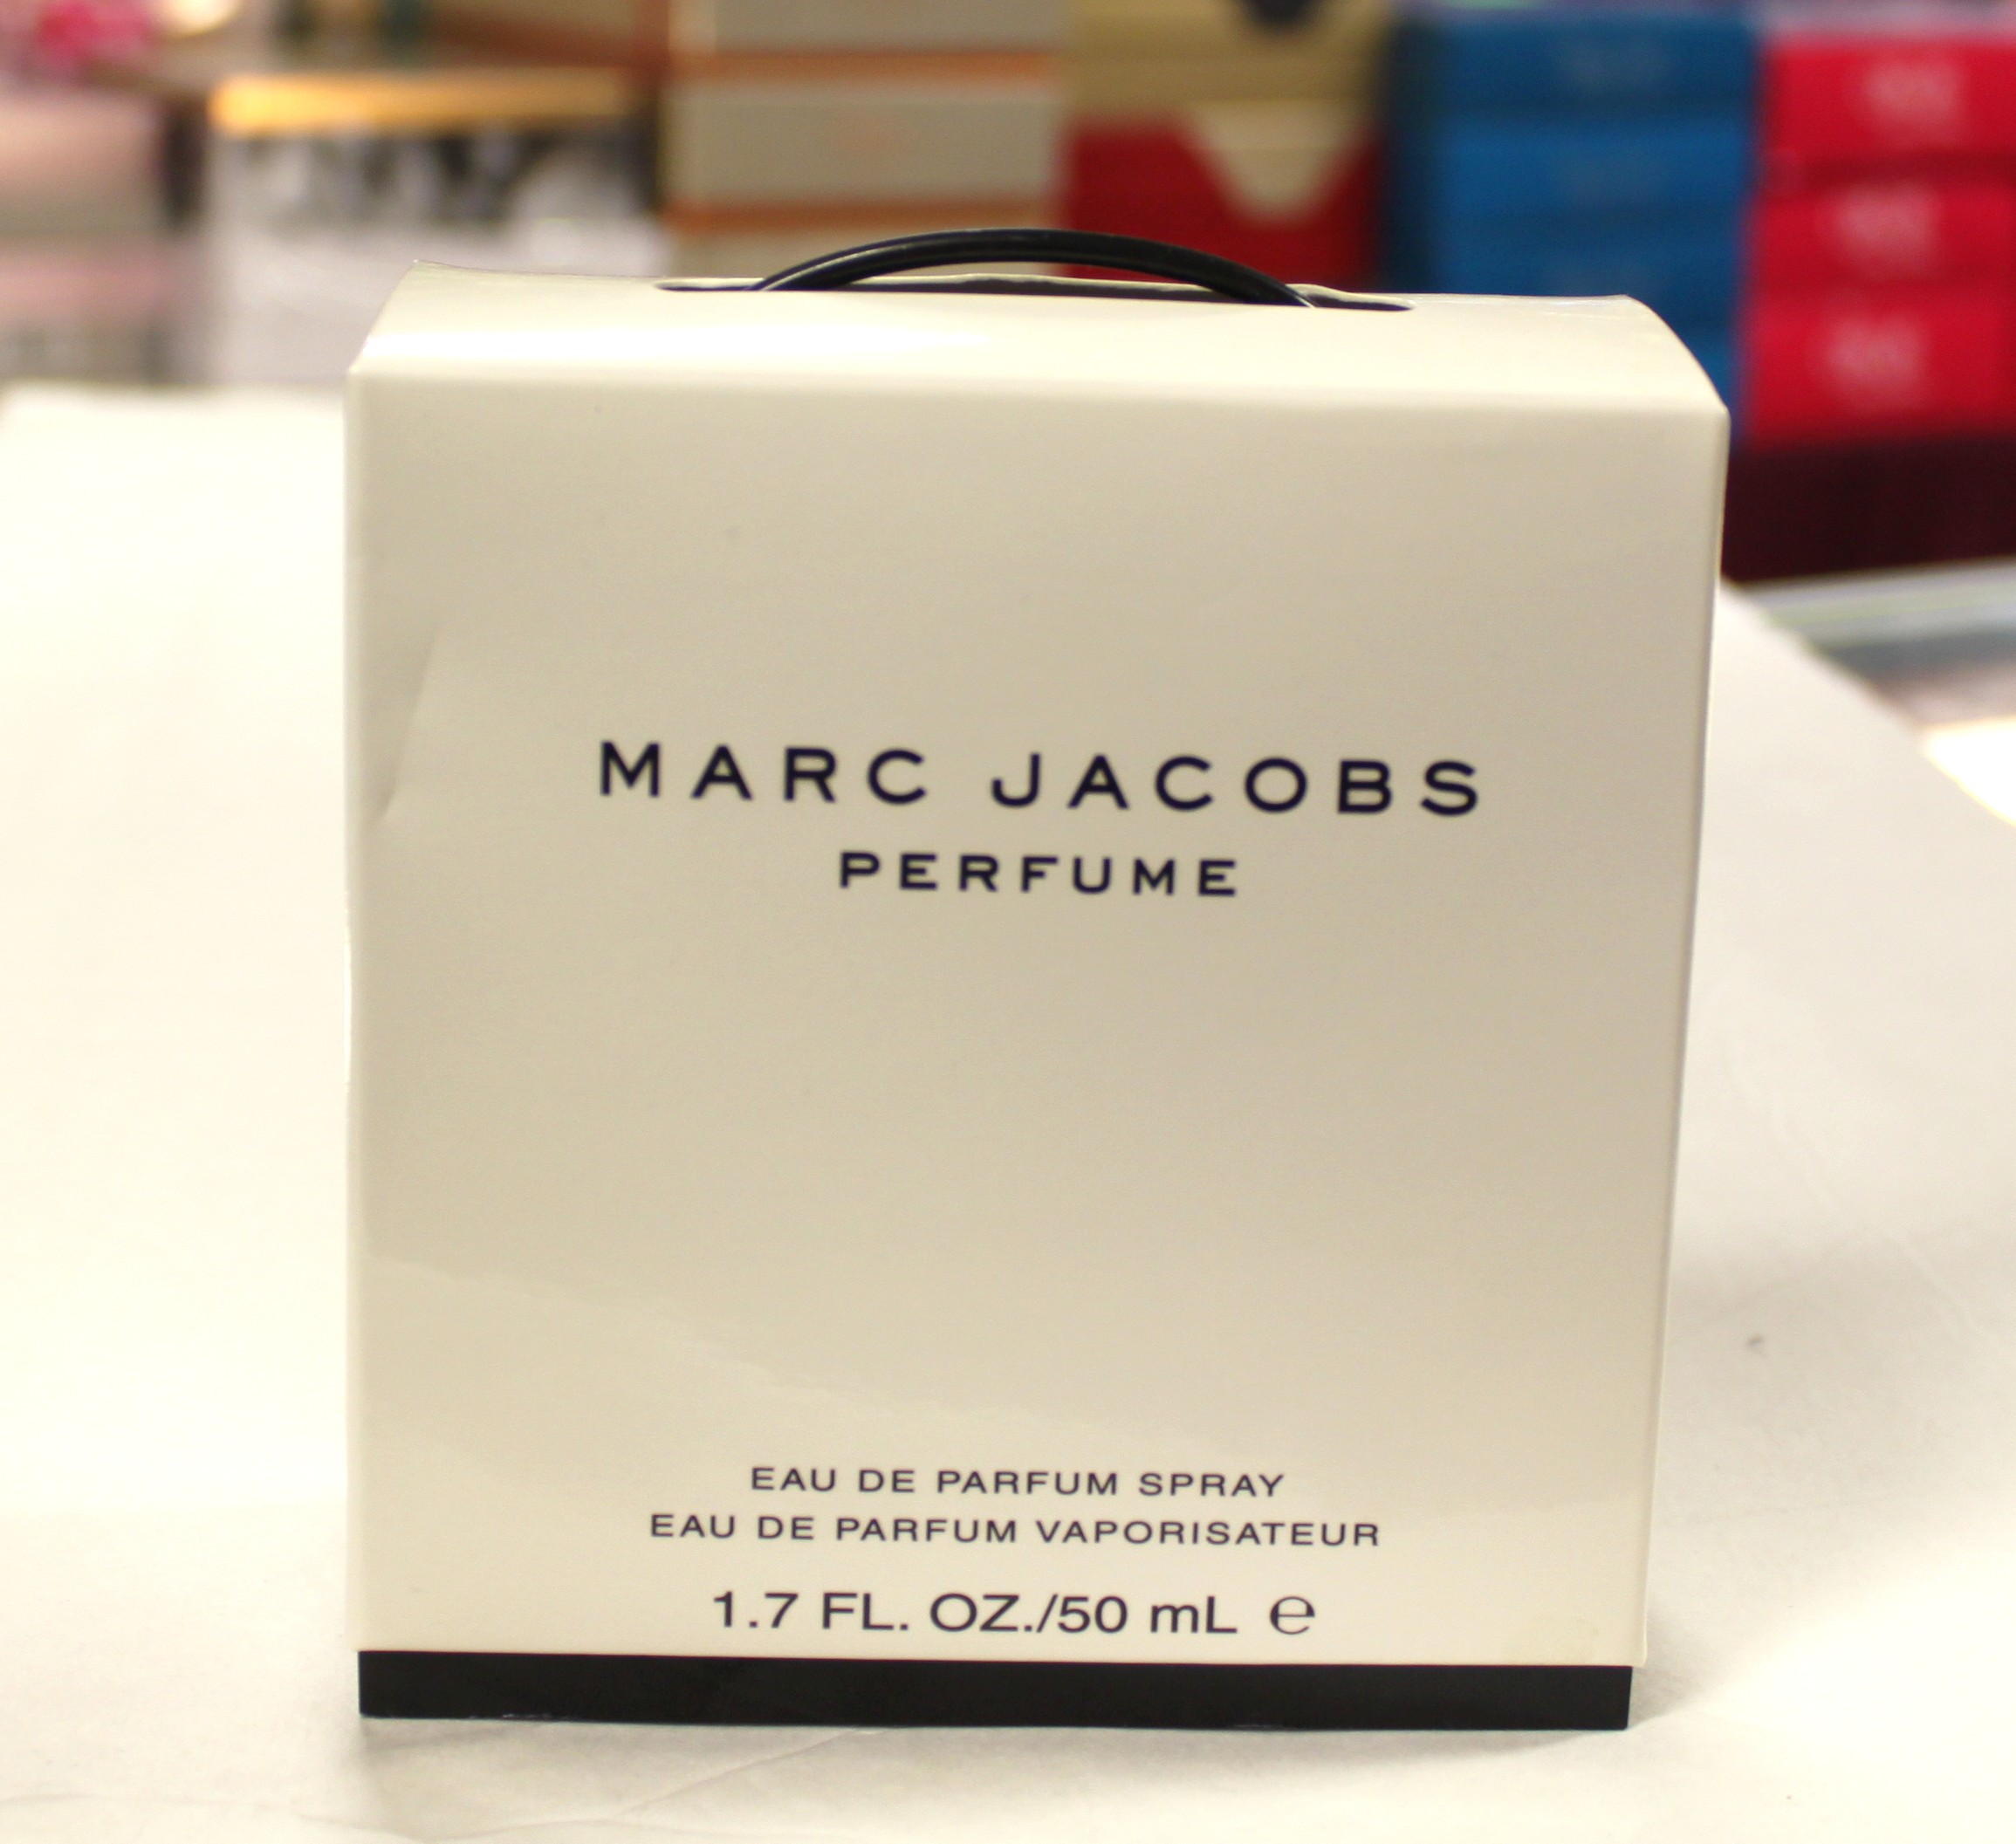 Marc Jacobs MARC JACOBS by MARC JACOBS for WOMEN 1.7 FL.OZ / 50 ML 